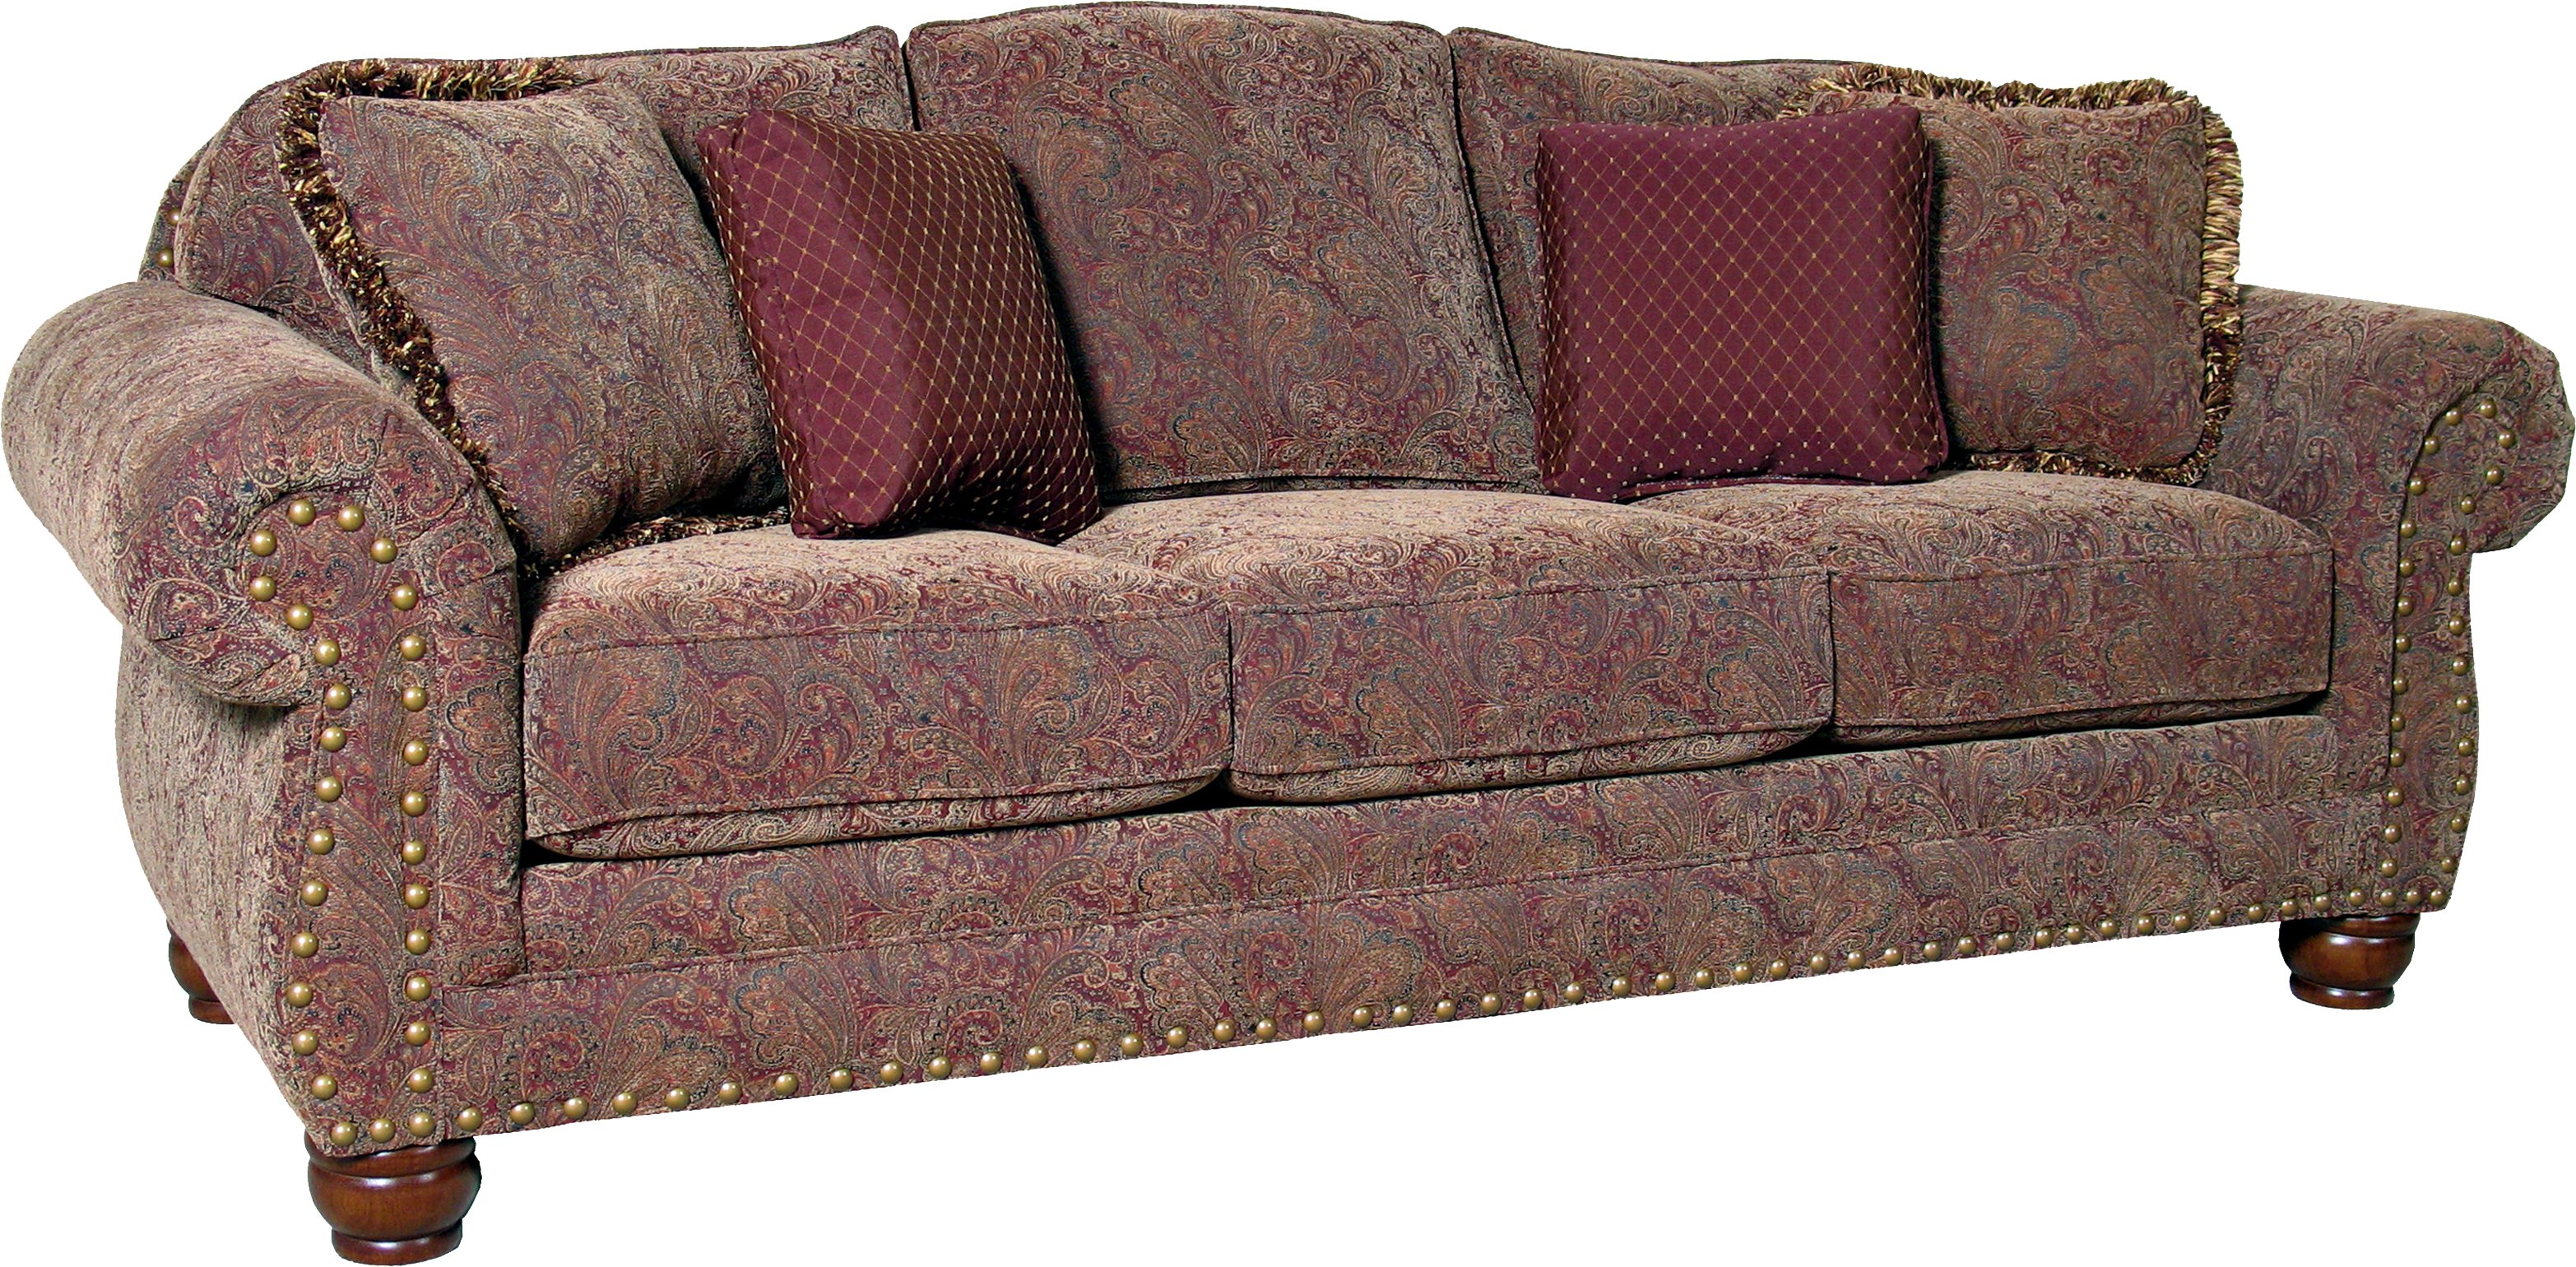 pandora/antique sofa CZSUYGZ